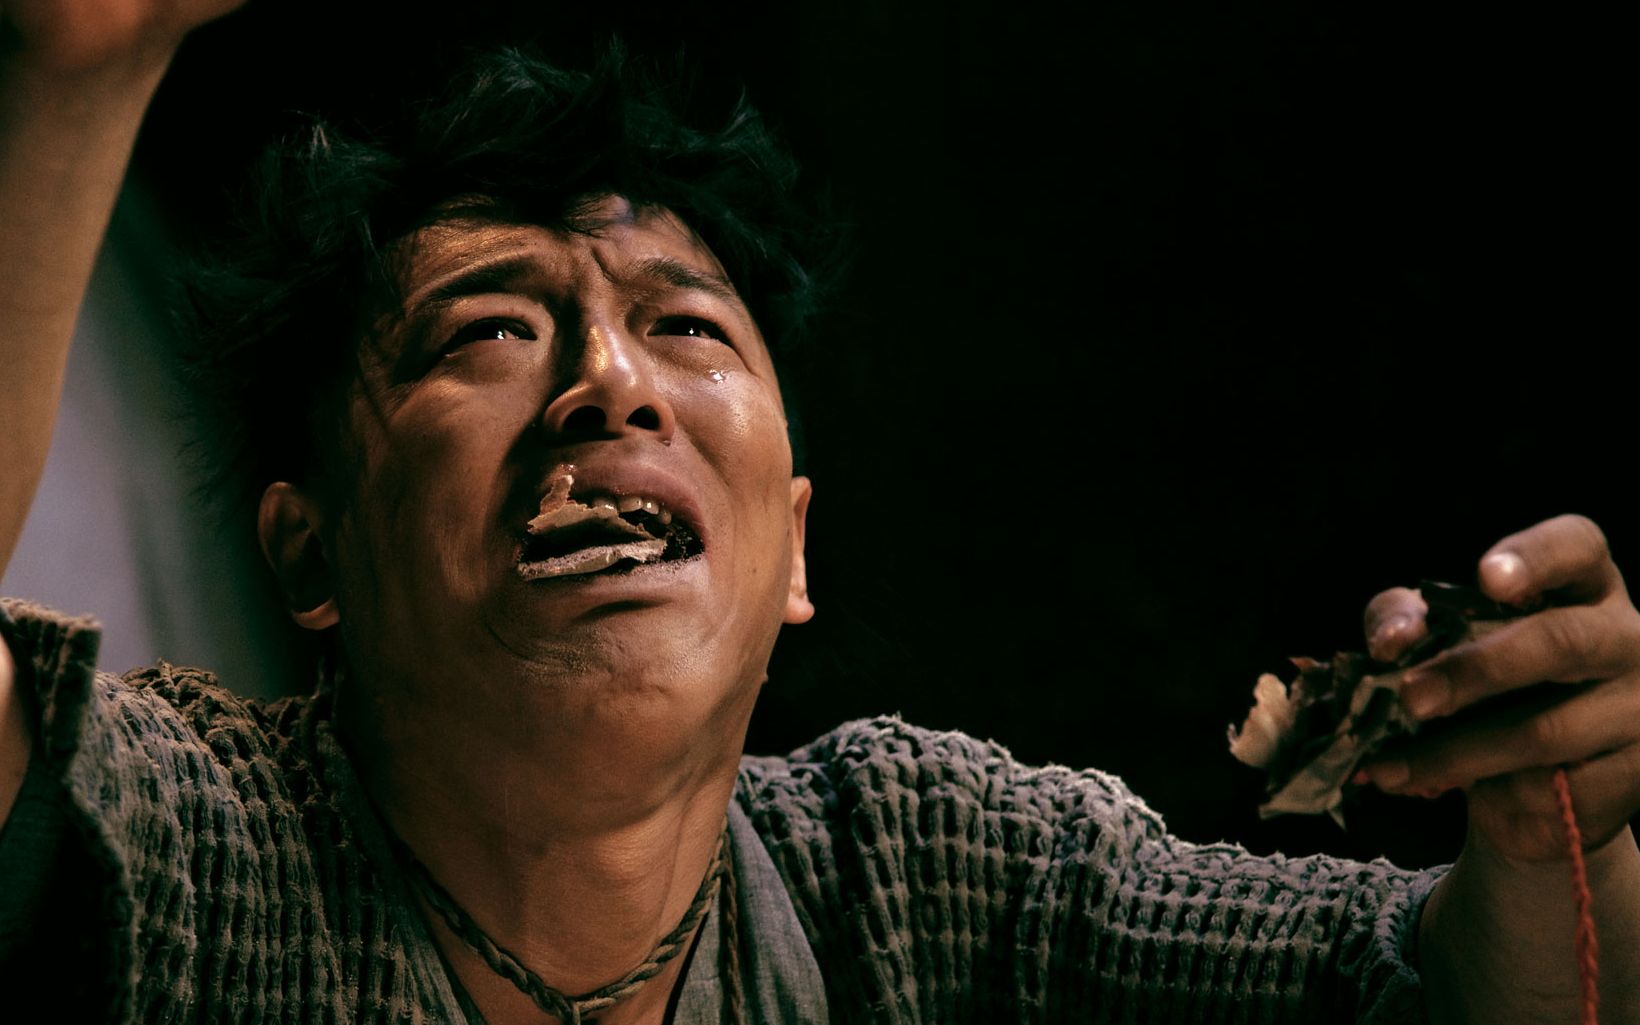 《杀生》:黄渤将催情药倒入井中,整个村子疯狂了,这部电影揭露着人性